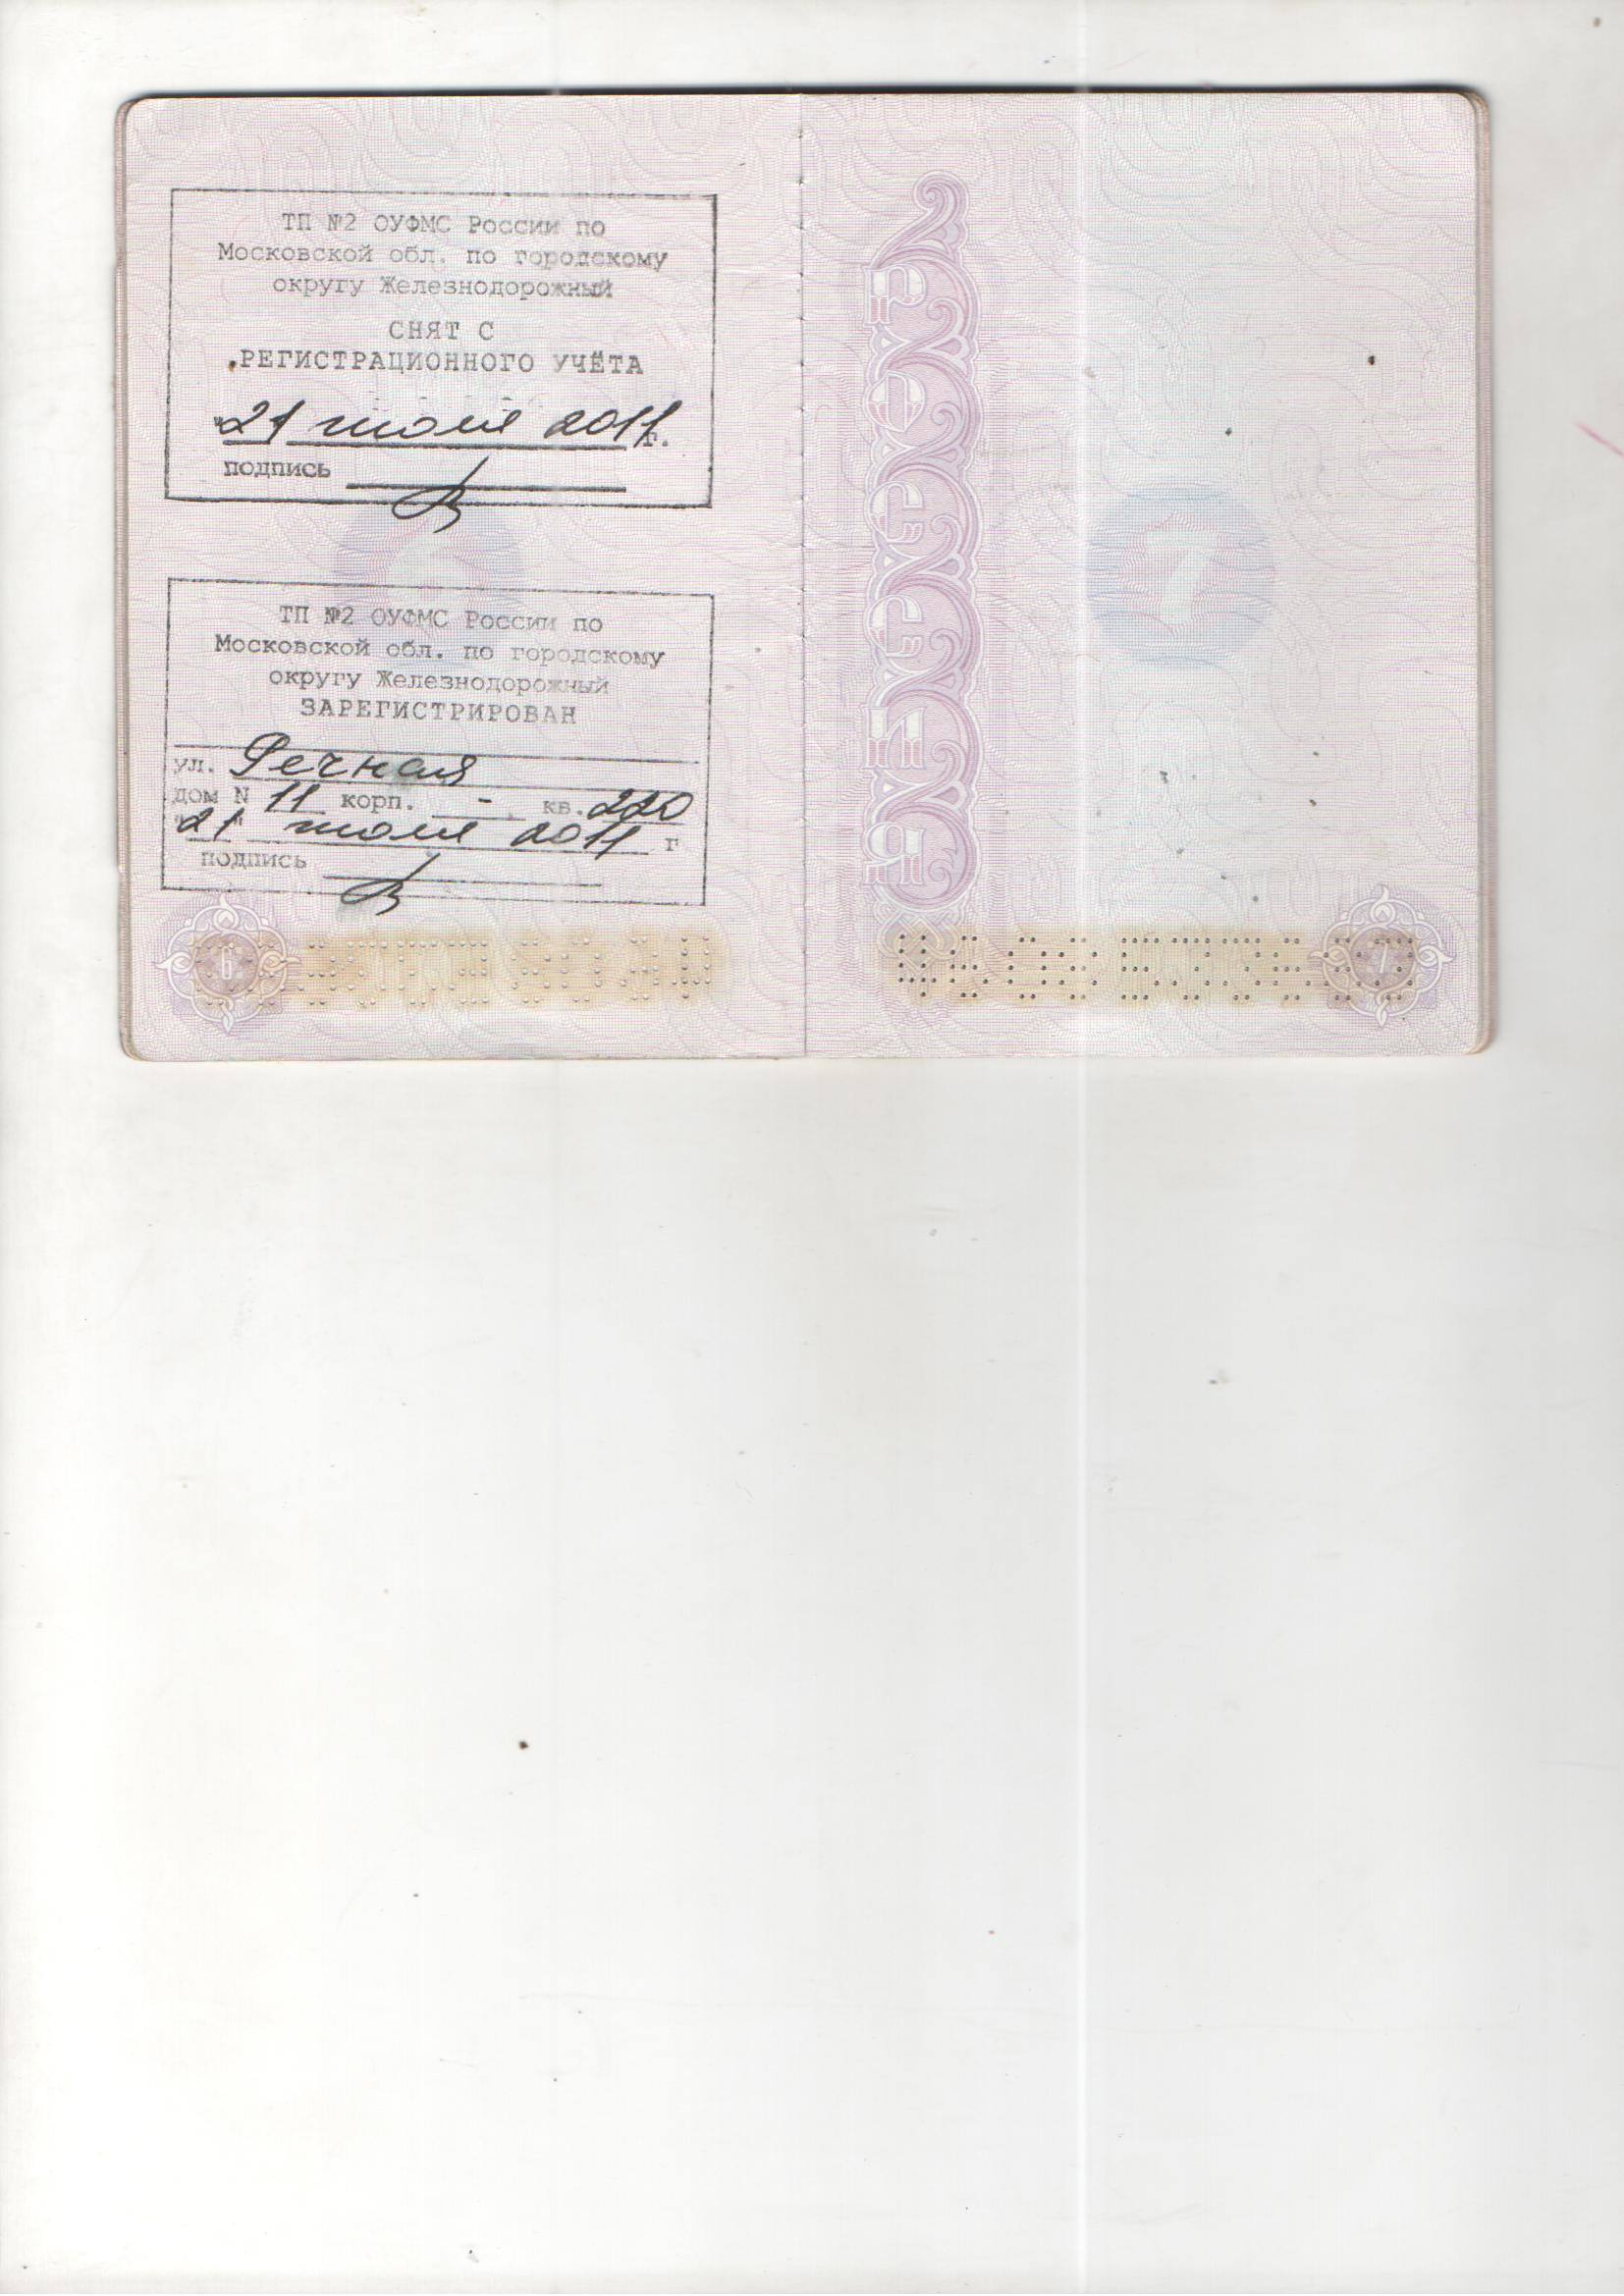 страница паспорта с актуальной регистрацией фото